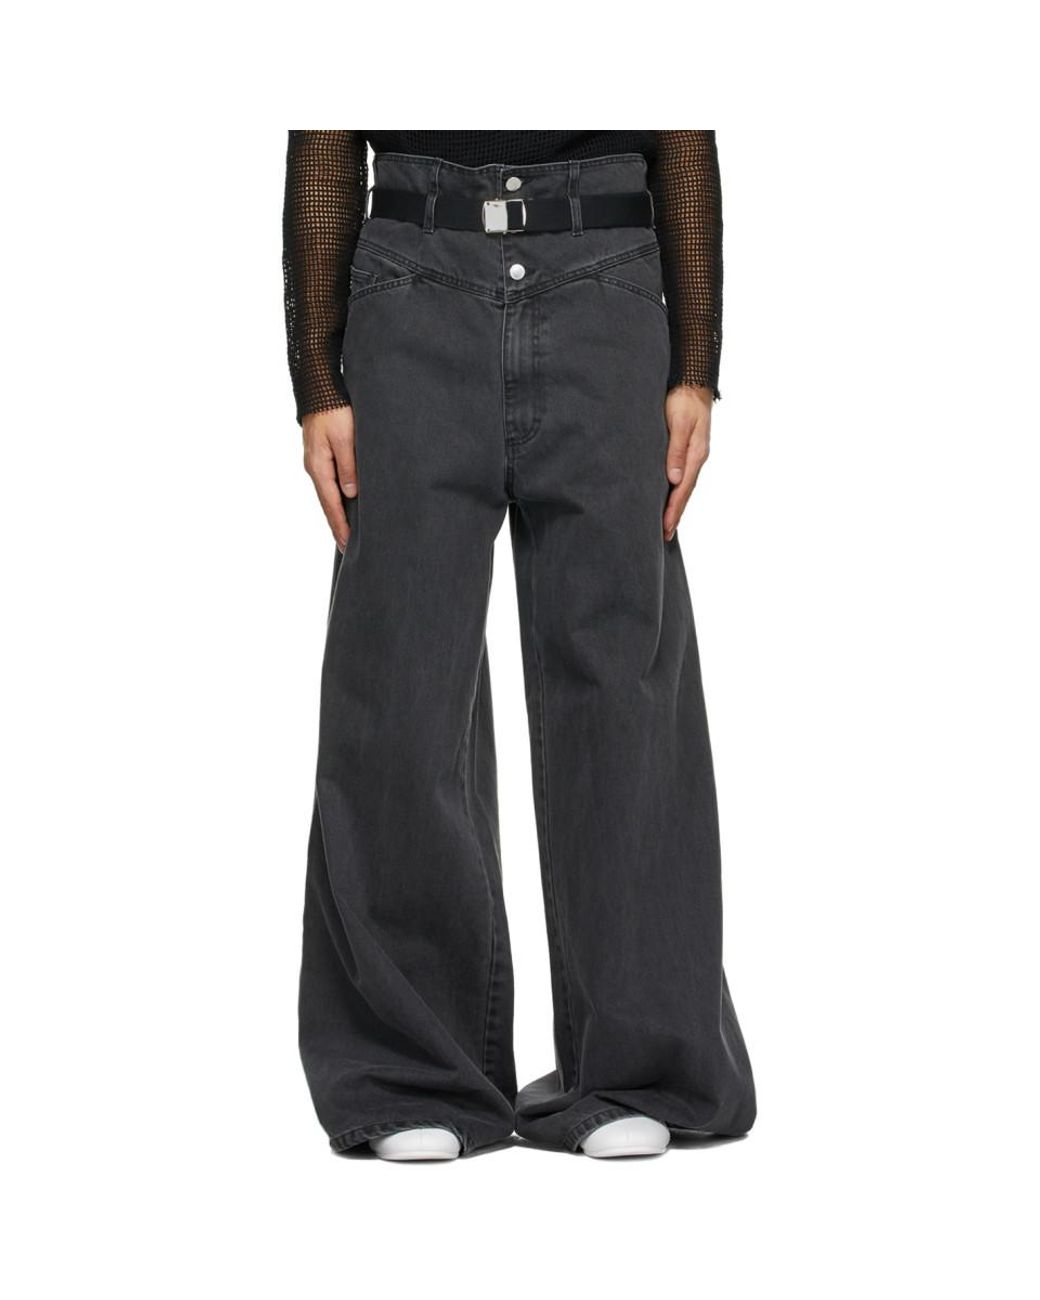 Raf Simons Denim Black Oversized Wide Jeans for Men - Lyst